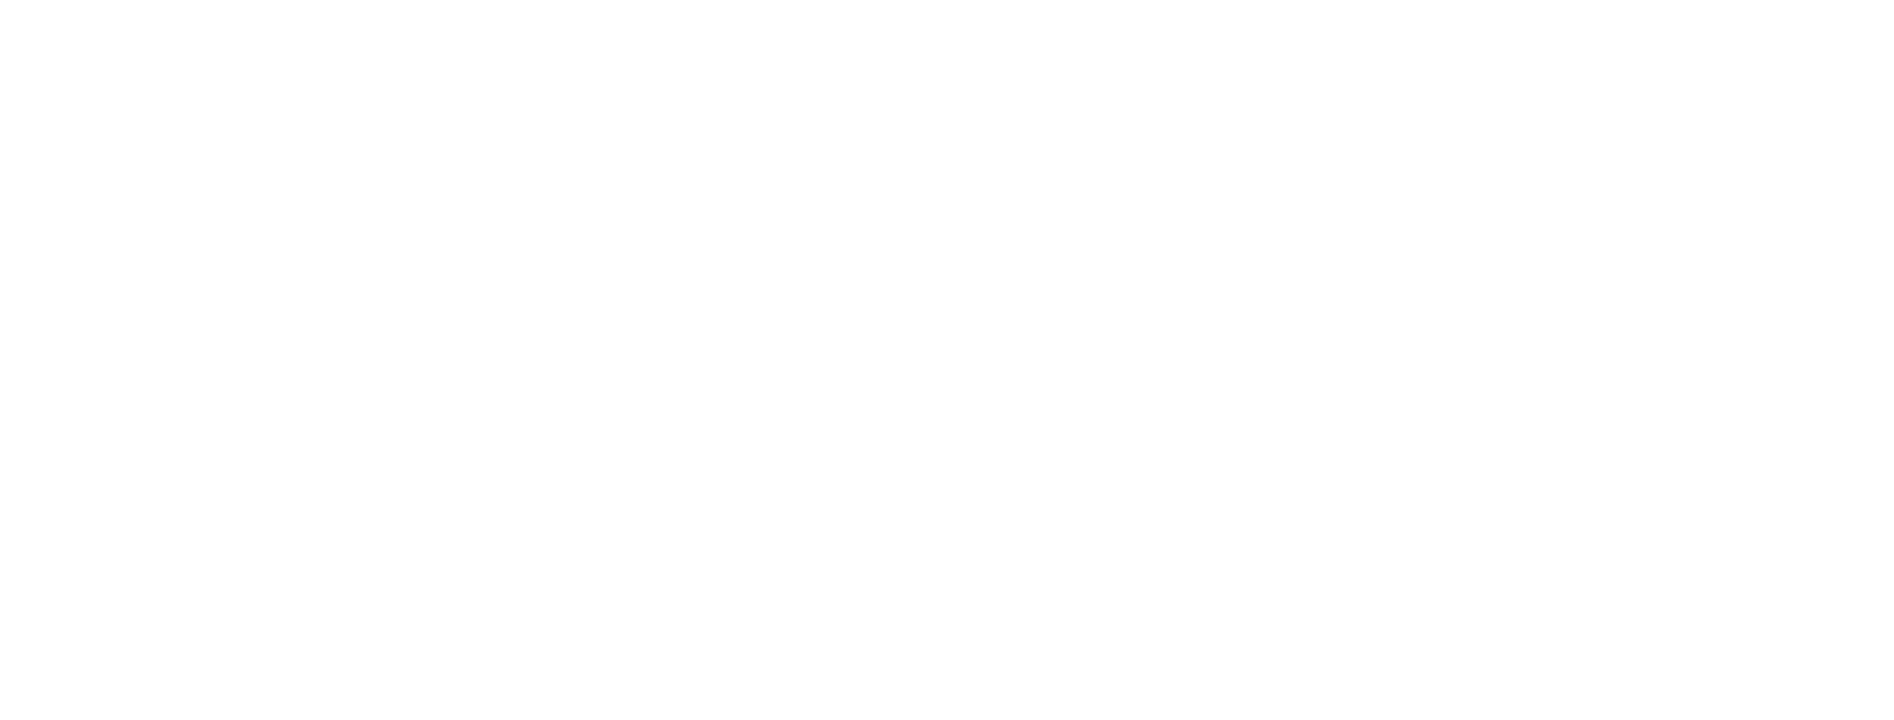 GoSeed logo white logo